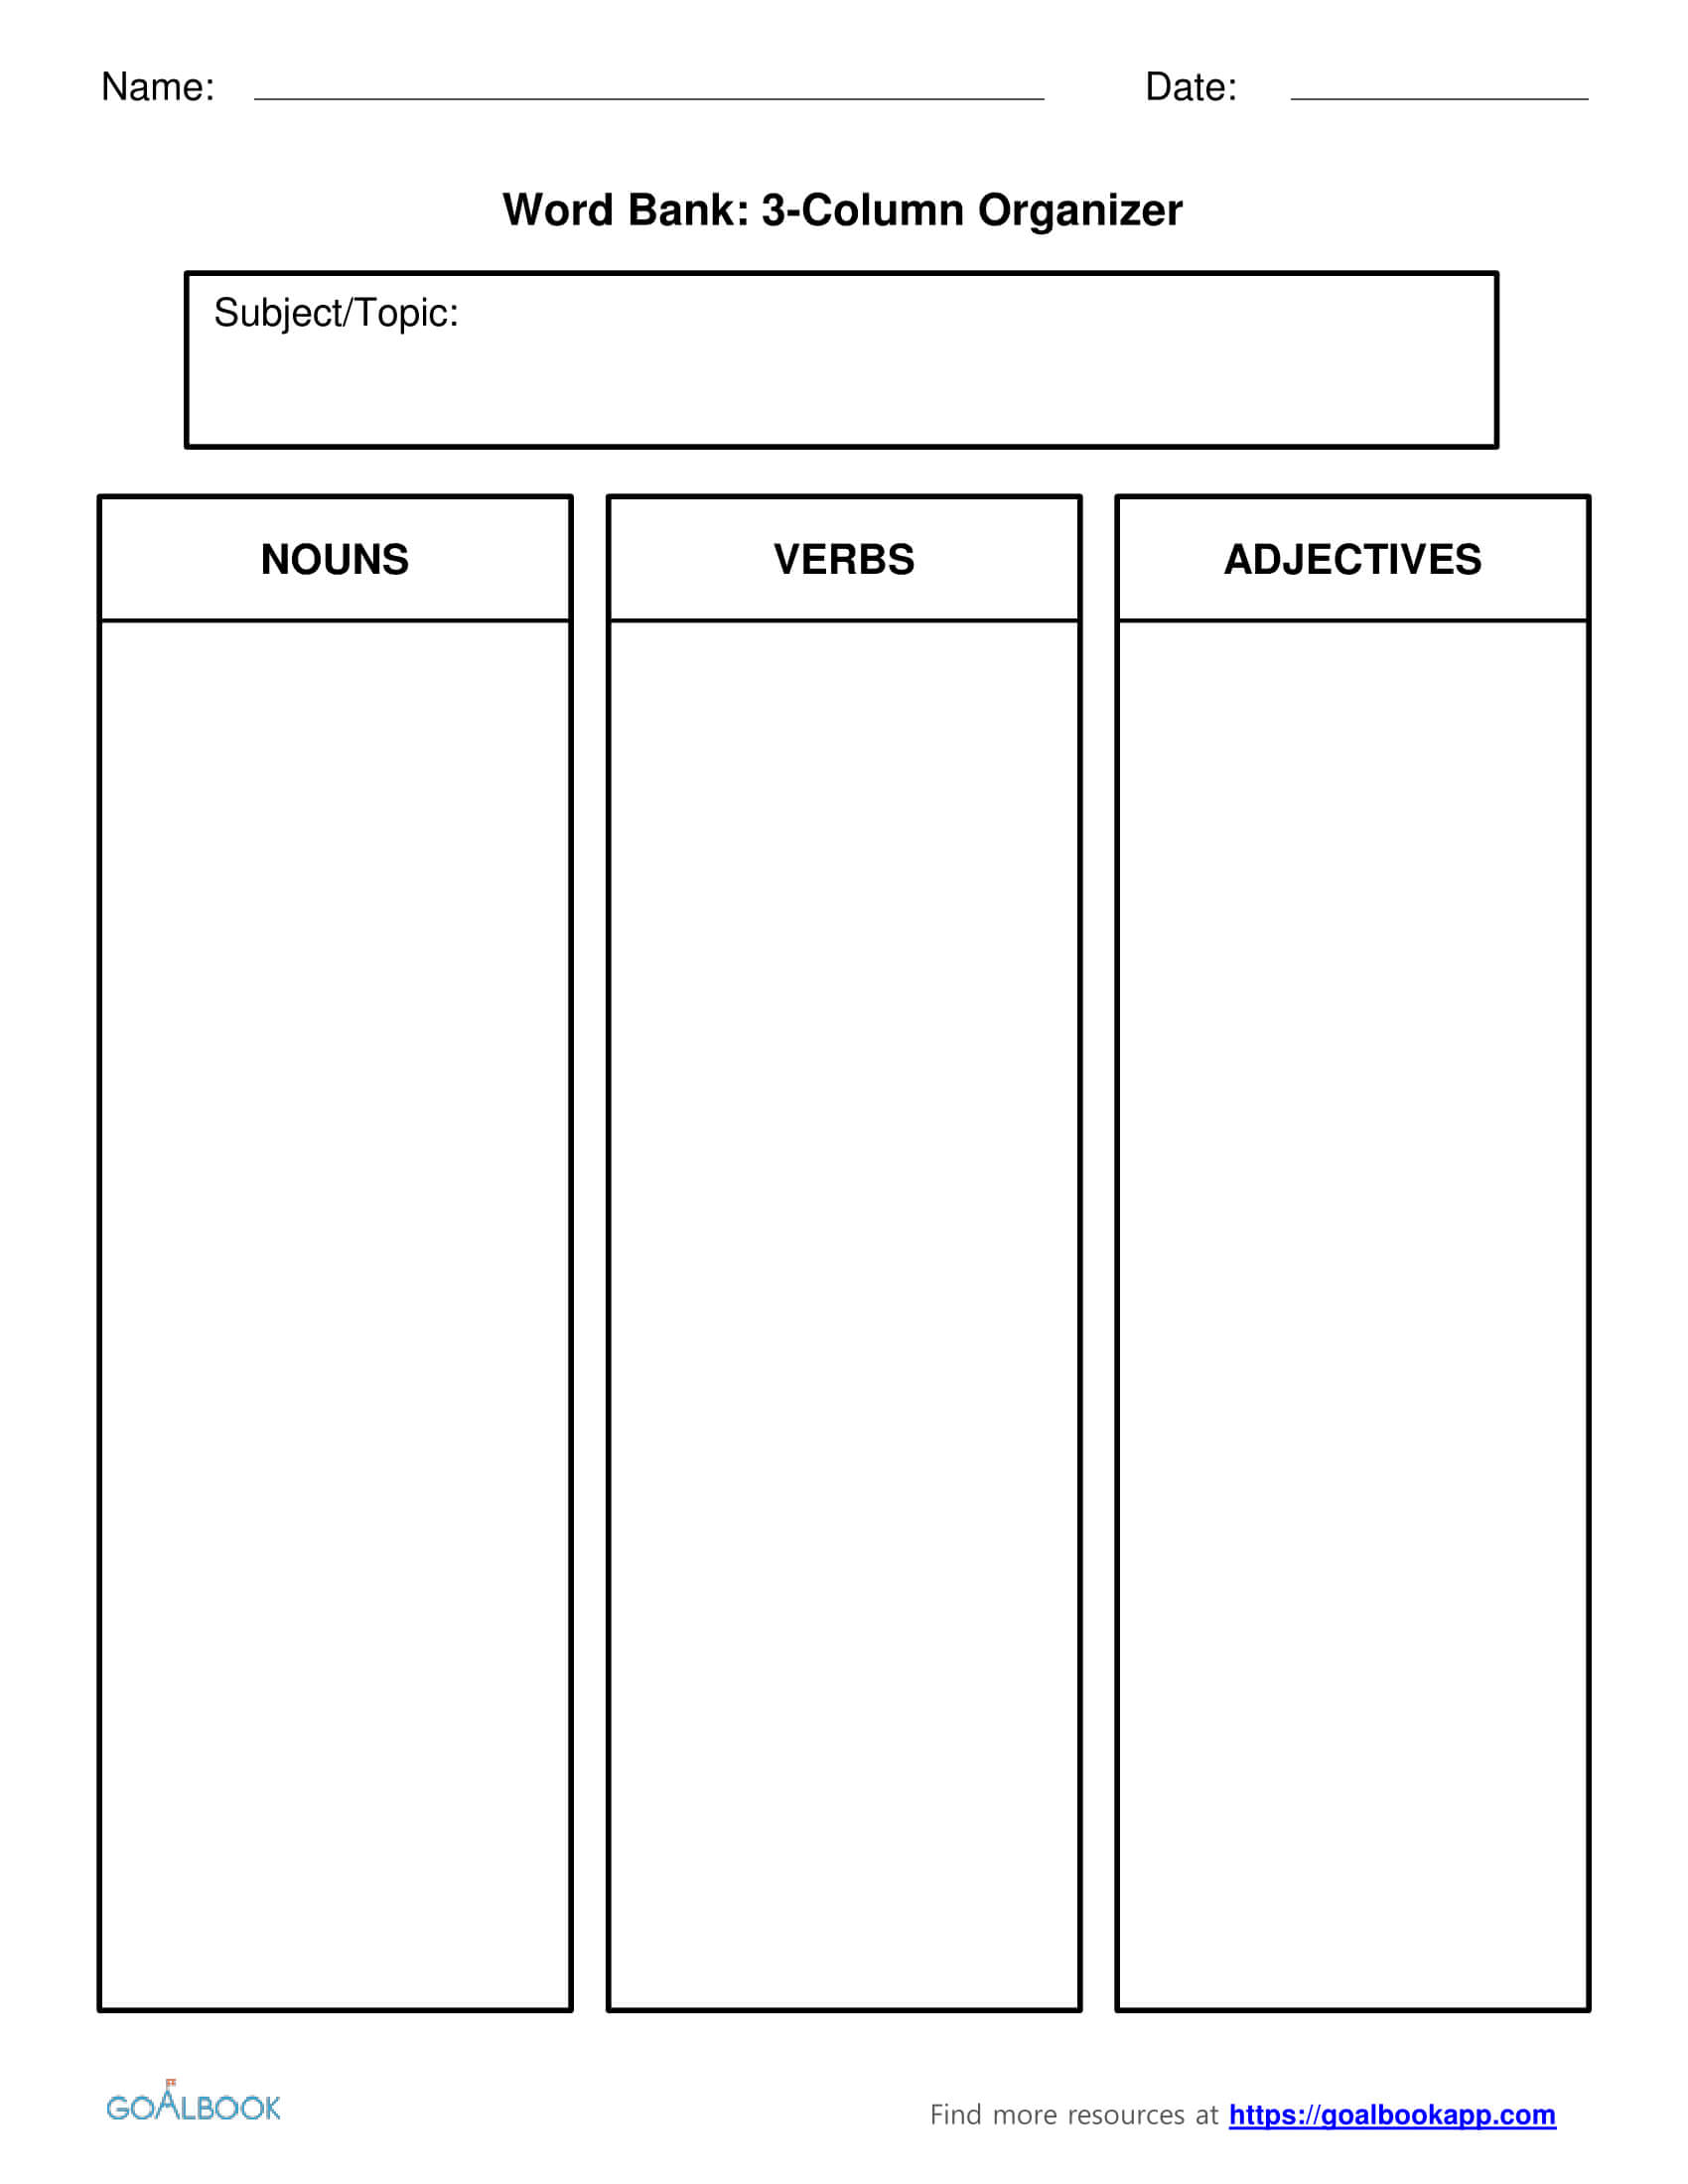 Word Bank | Udl Strategies - Goalbook Toolkit Inside 3 Column Word Template